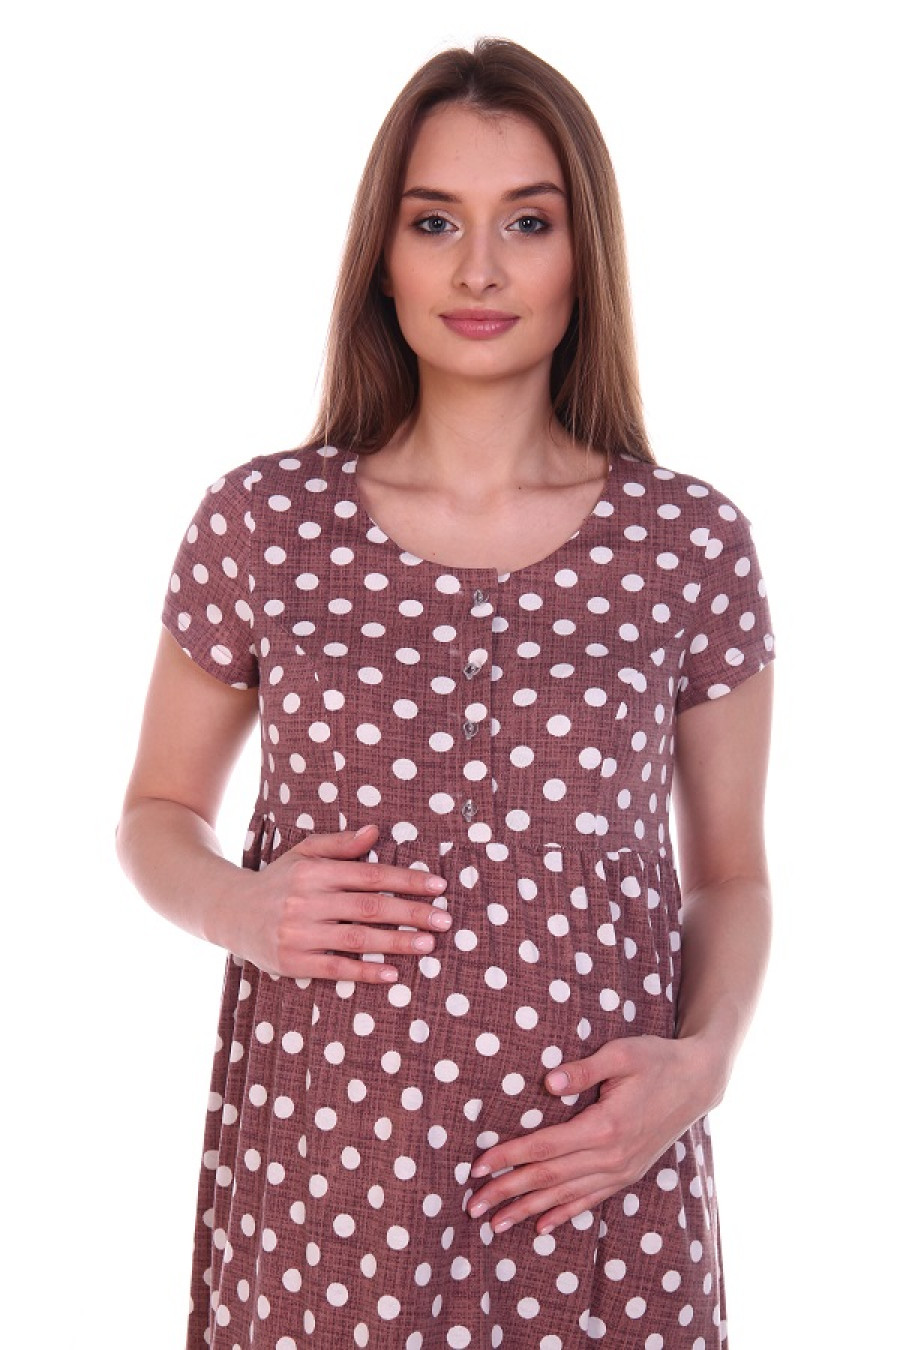 Платье женское для беременных 8.109 коричневый